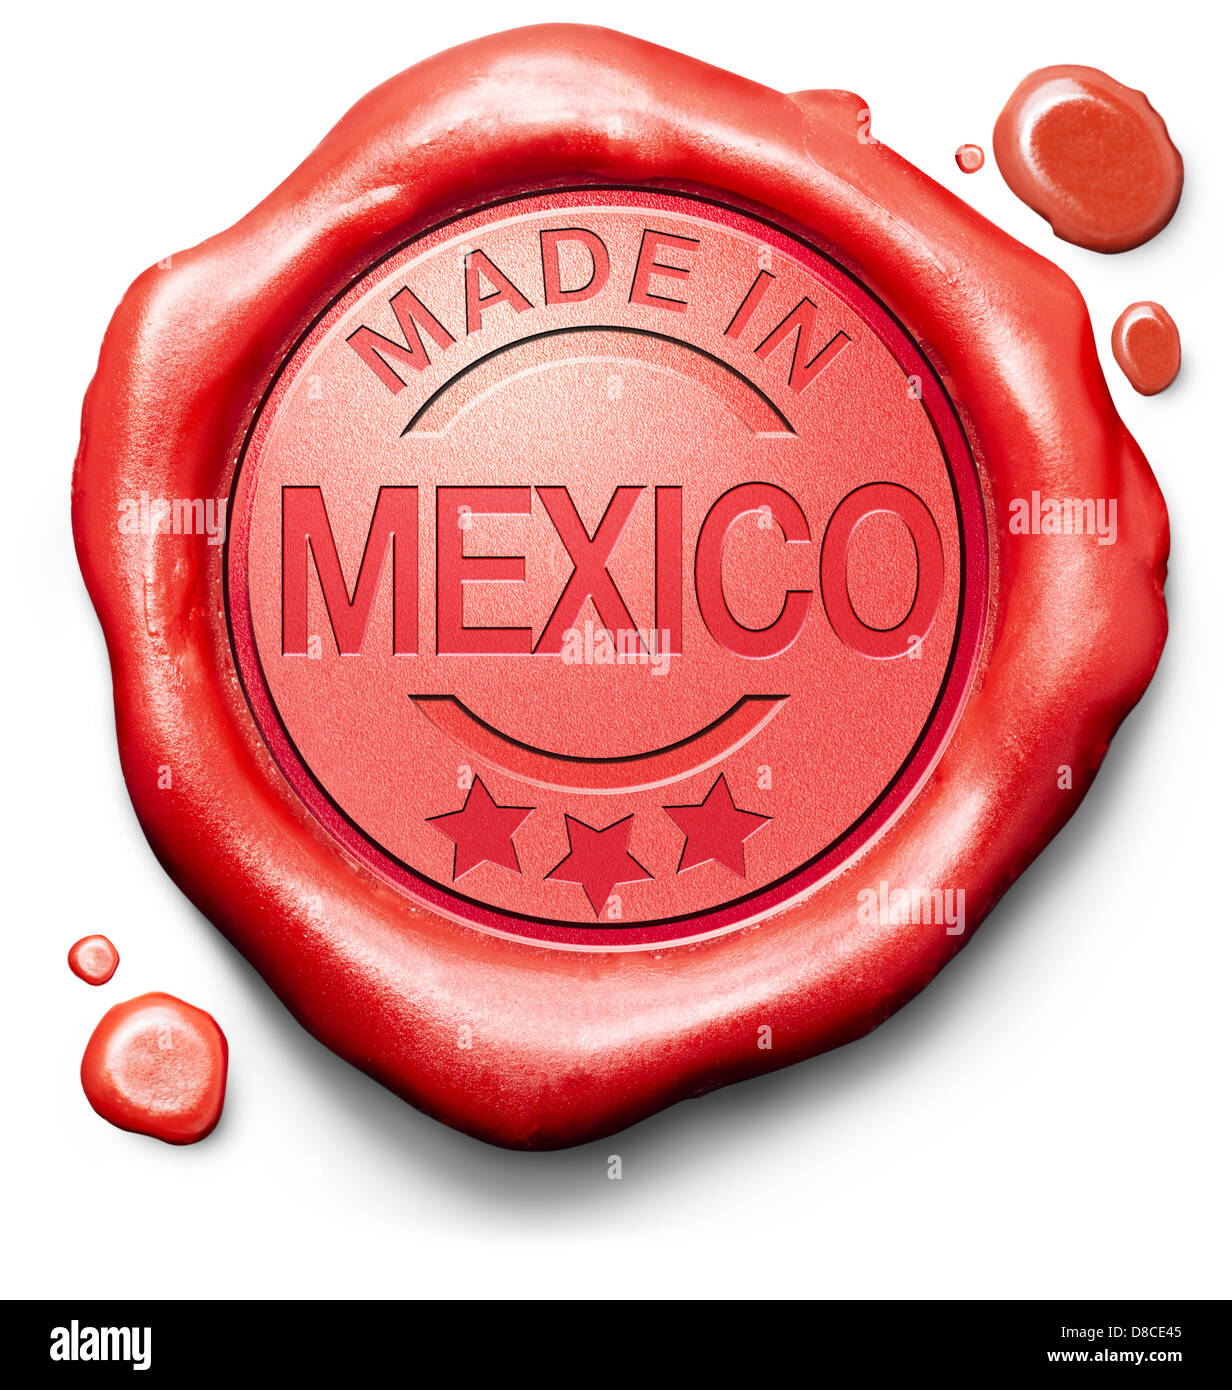 hergestellt in Mexiko Originalprodukt kaufen lokale kaufen authentische mexikanische Qualität Label rote Wachssiegel Stempel Stockfoto